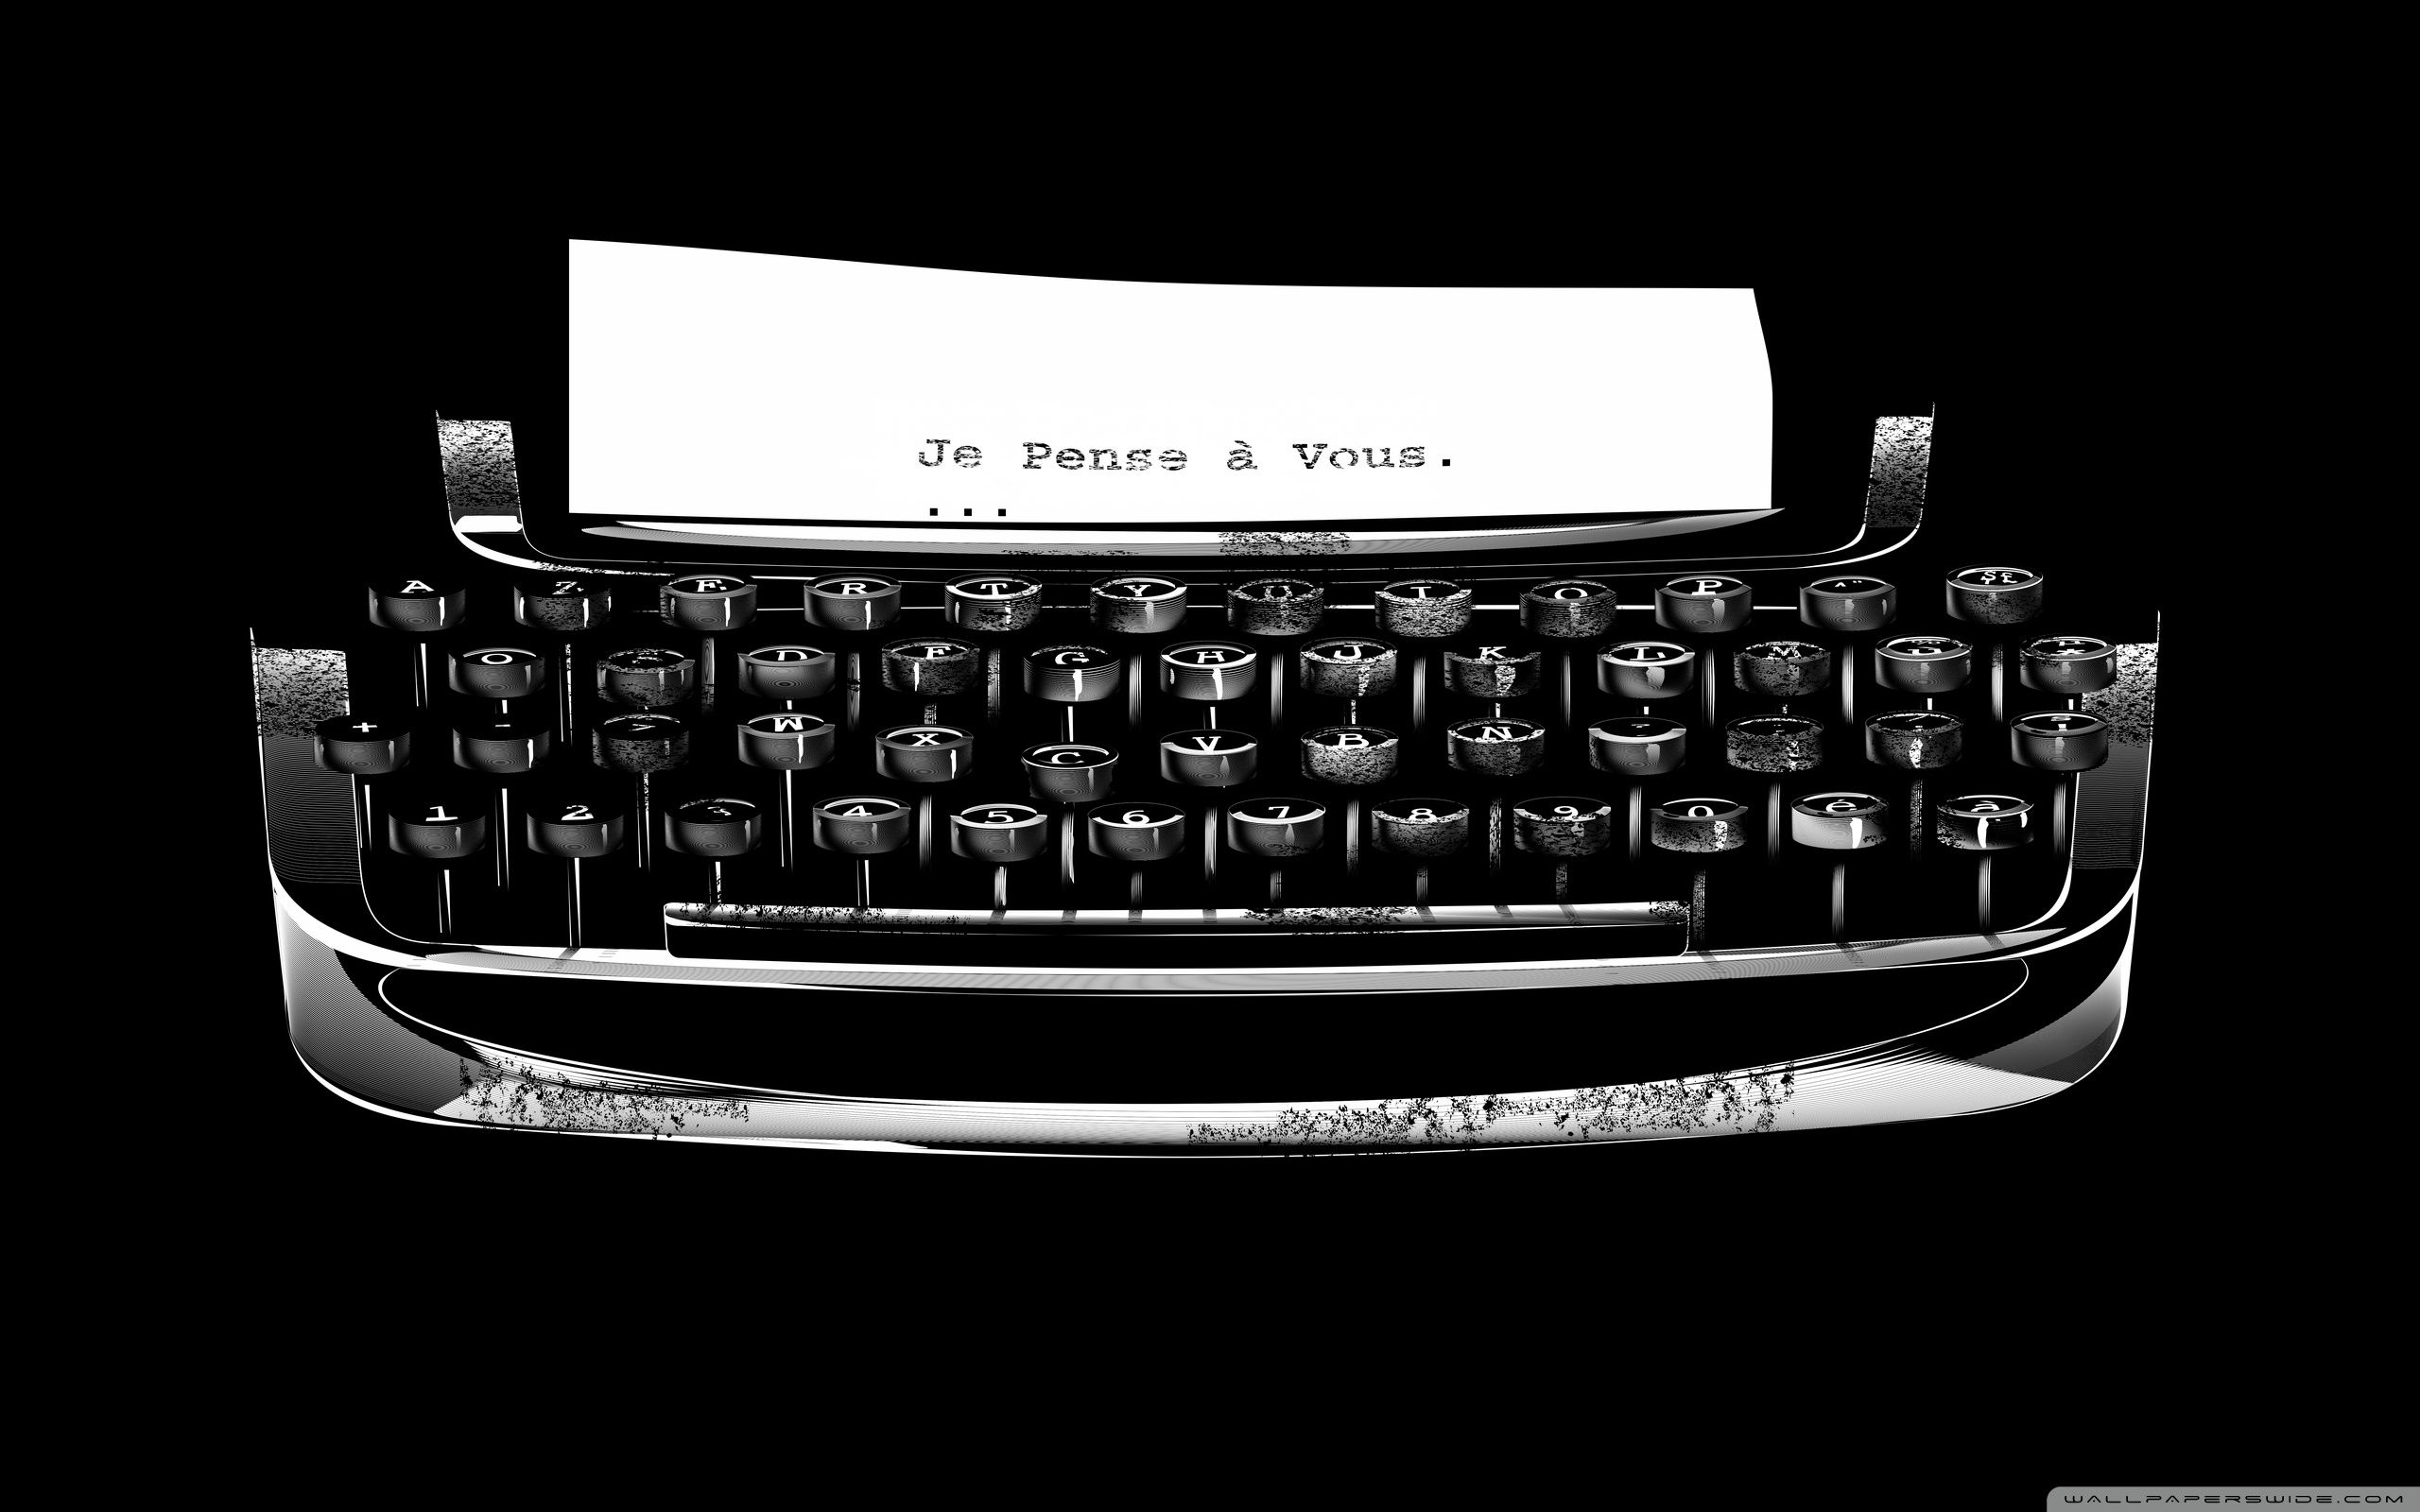 Typewriter Wallpapers